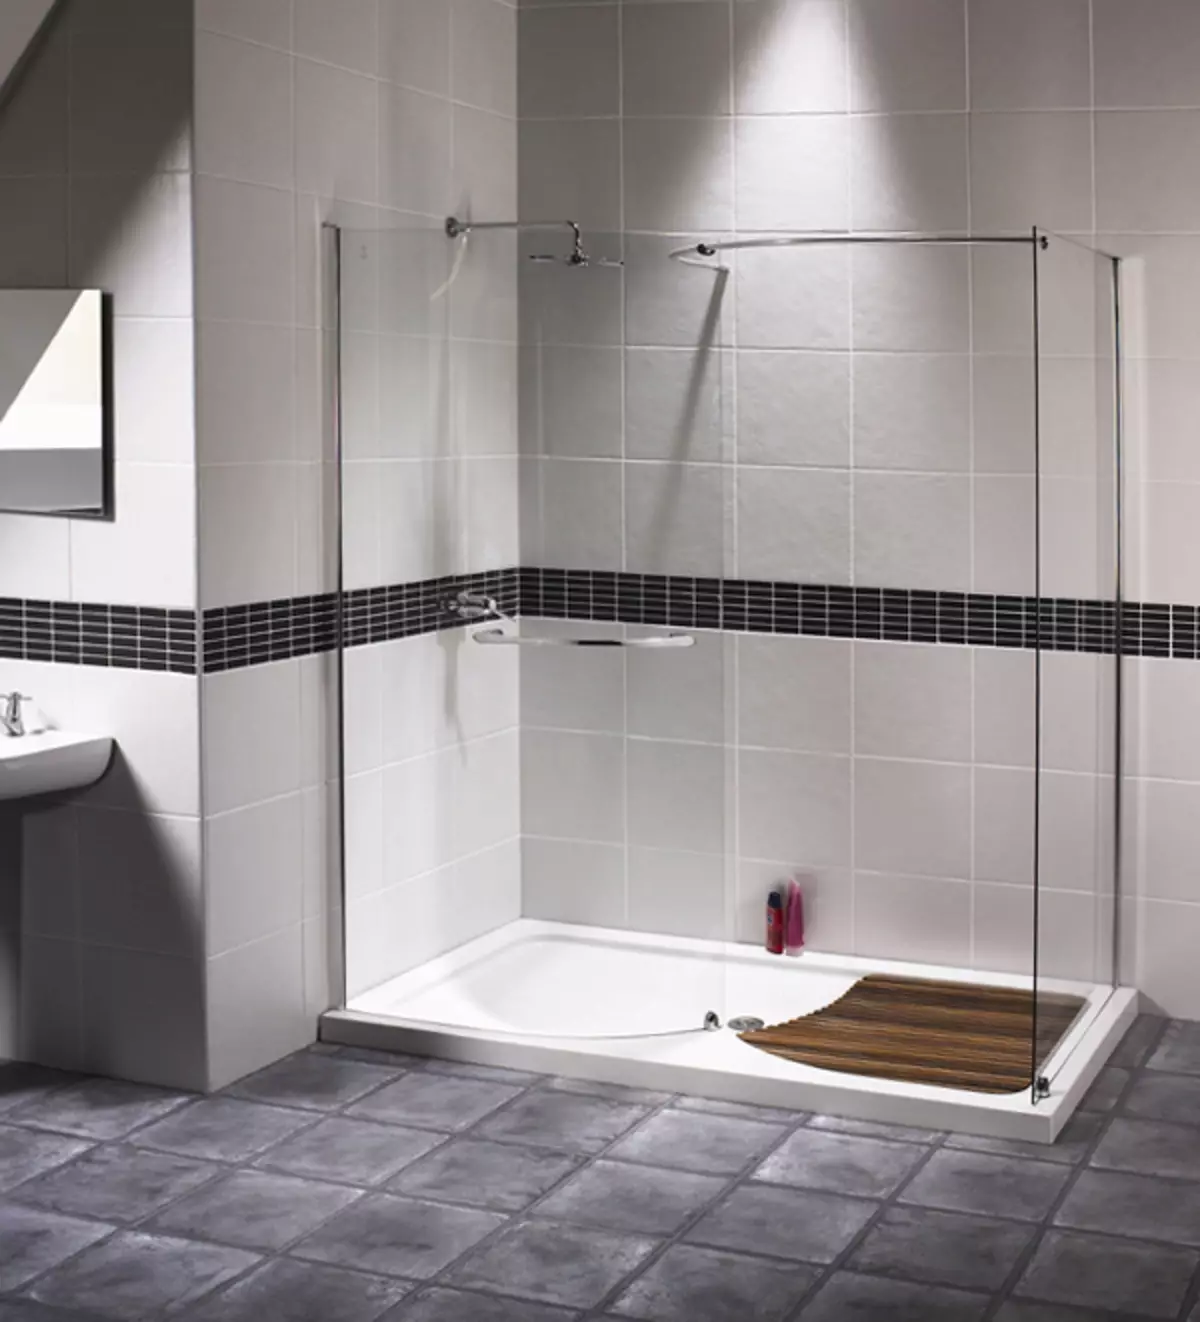 Cabinas abiertas de ducha: sin techo y paleta baja de 90x90 cm, modelos angulares, tamaños 100x100 y 120x80 cm, otros modelos para el baño 10334_10